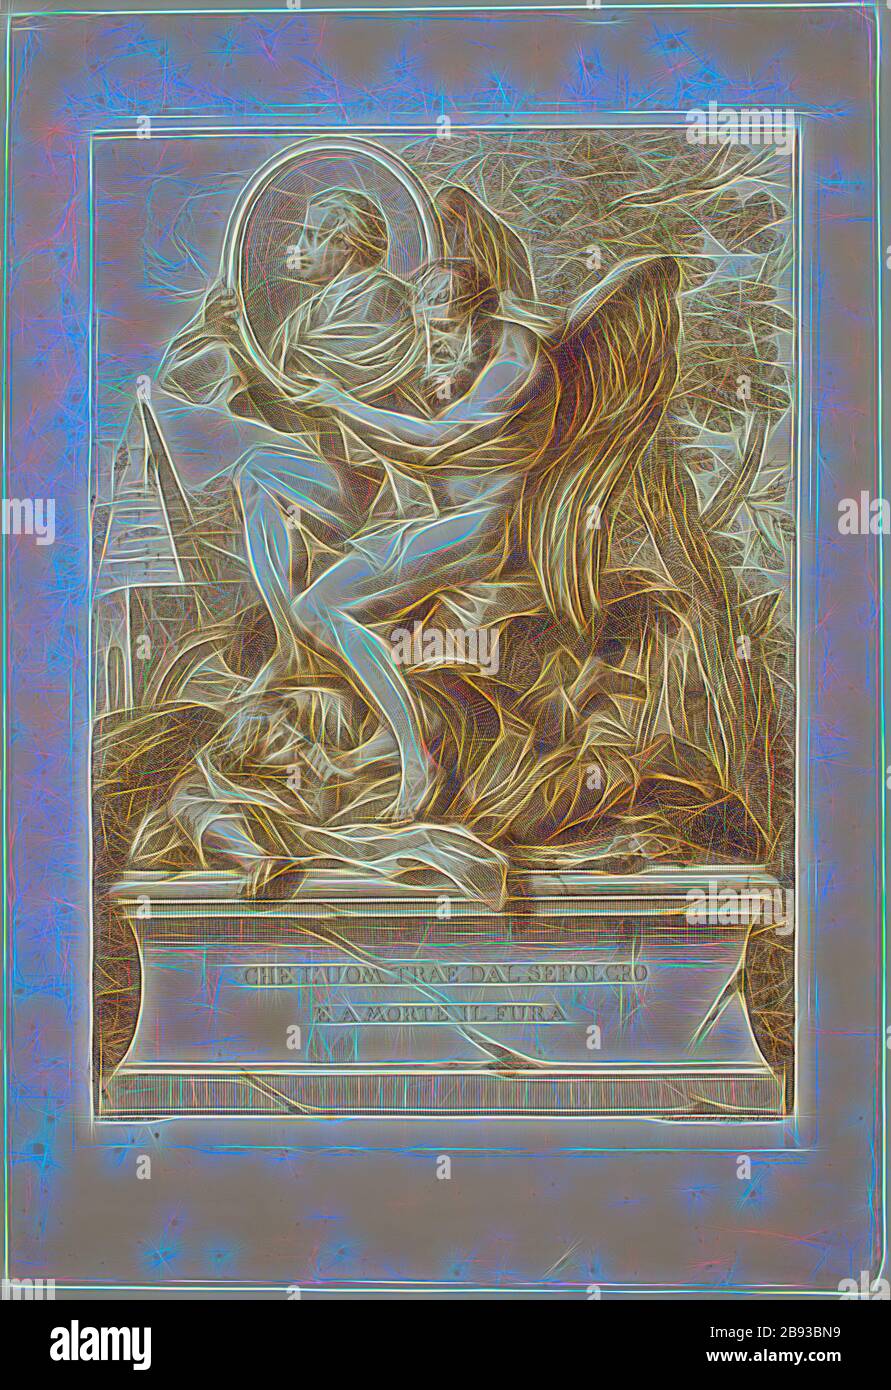 Francesco Bartolozzi, italien, 1727-1815, après Carlo Maratta, italien, 1625-1713, Pietro da Cortona 1596 - 1669, entre 1727 et 1815, gravure et gravure imprimées à l'encre brune sur du papier vélin, plaque : 44,8 × 31,8 cm (17 5/8 × 12 1/2 pouces), repensé par Gibon, design de brillant chaleureux de luminosité et de rayonnement de rayons lumineux. L'art classique réinventé avec une touche moderne. La photographie inspirée du futurisme, qui embrasse l'énergie dynamique de la technologie moderne, du mouvement, de la vitesse et révolutionne la culture. Banque D'Images